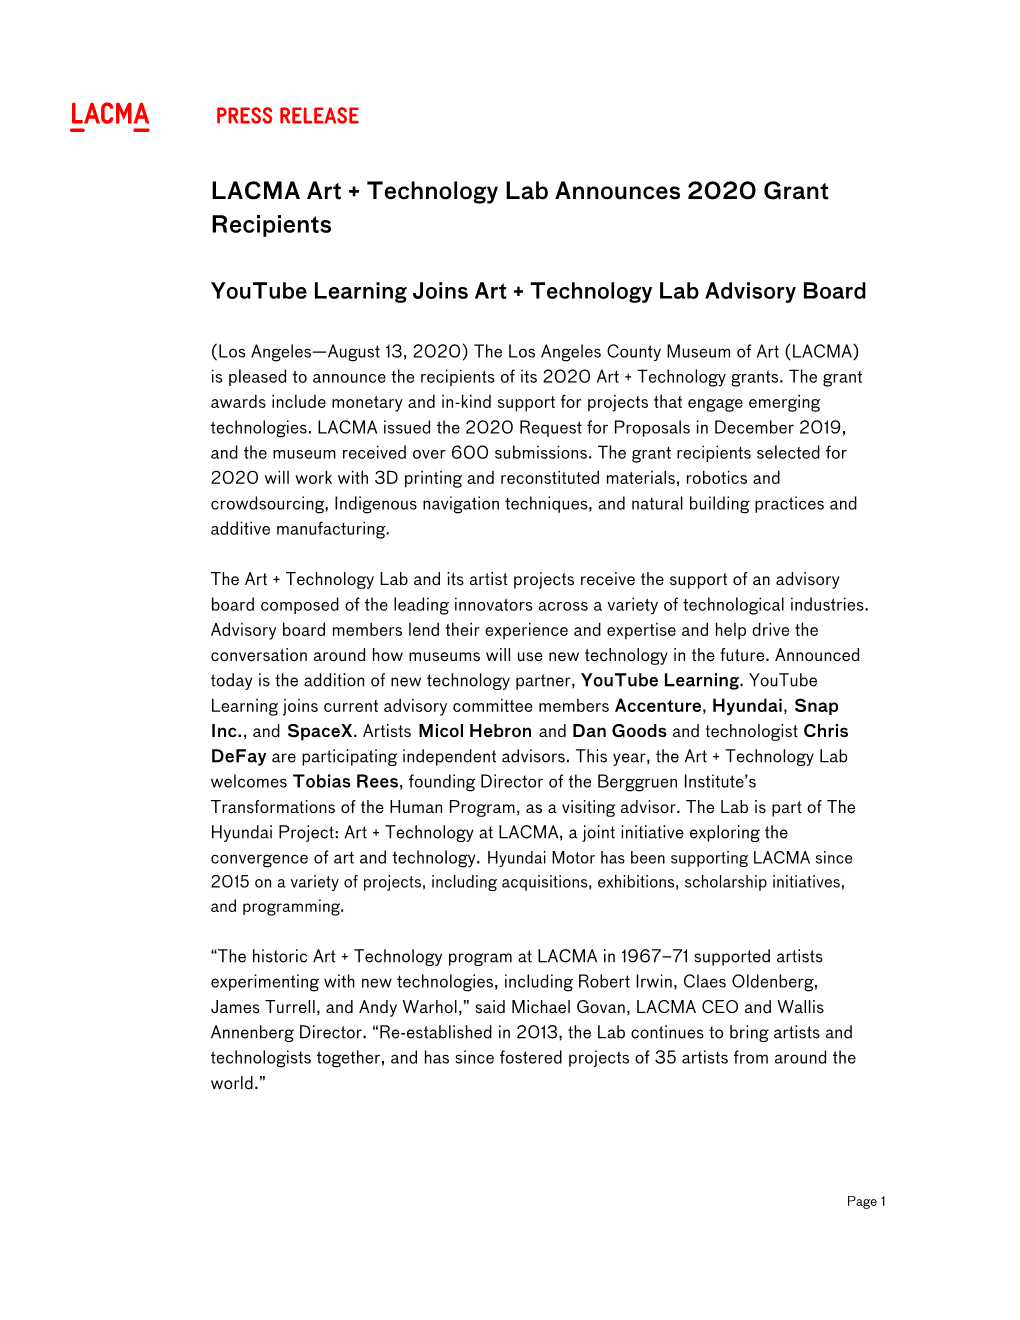 Press Release LACMA Art + Technology Lab Announces 2020